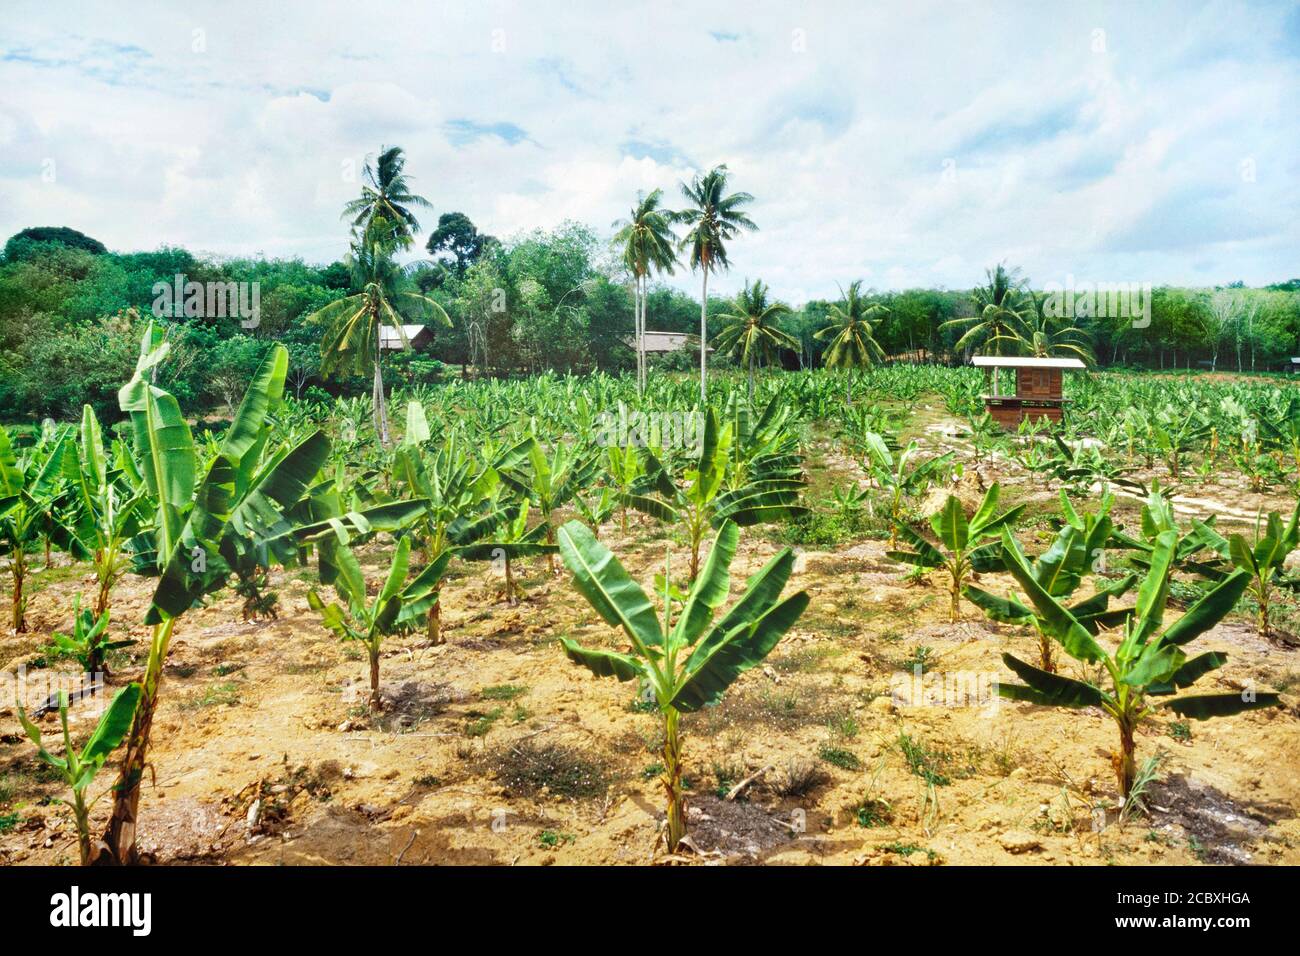 Small banana plantation, Malaysia Stock Photo